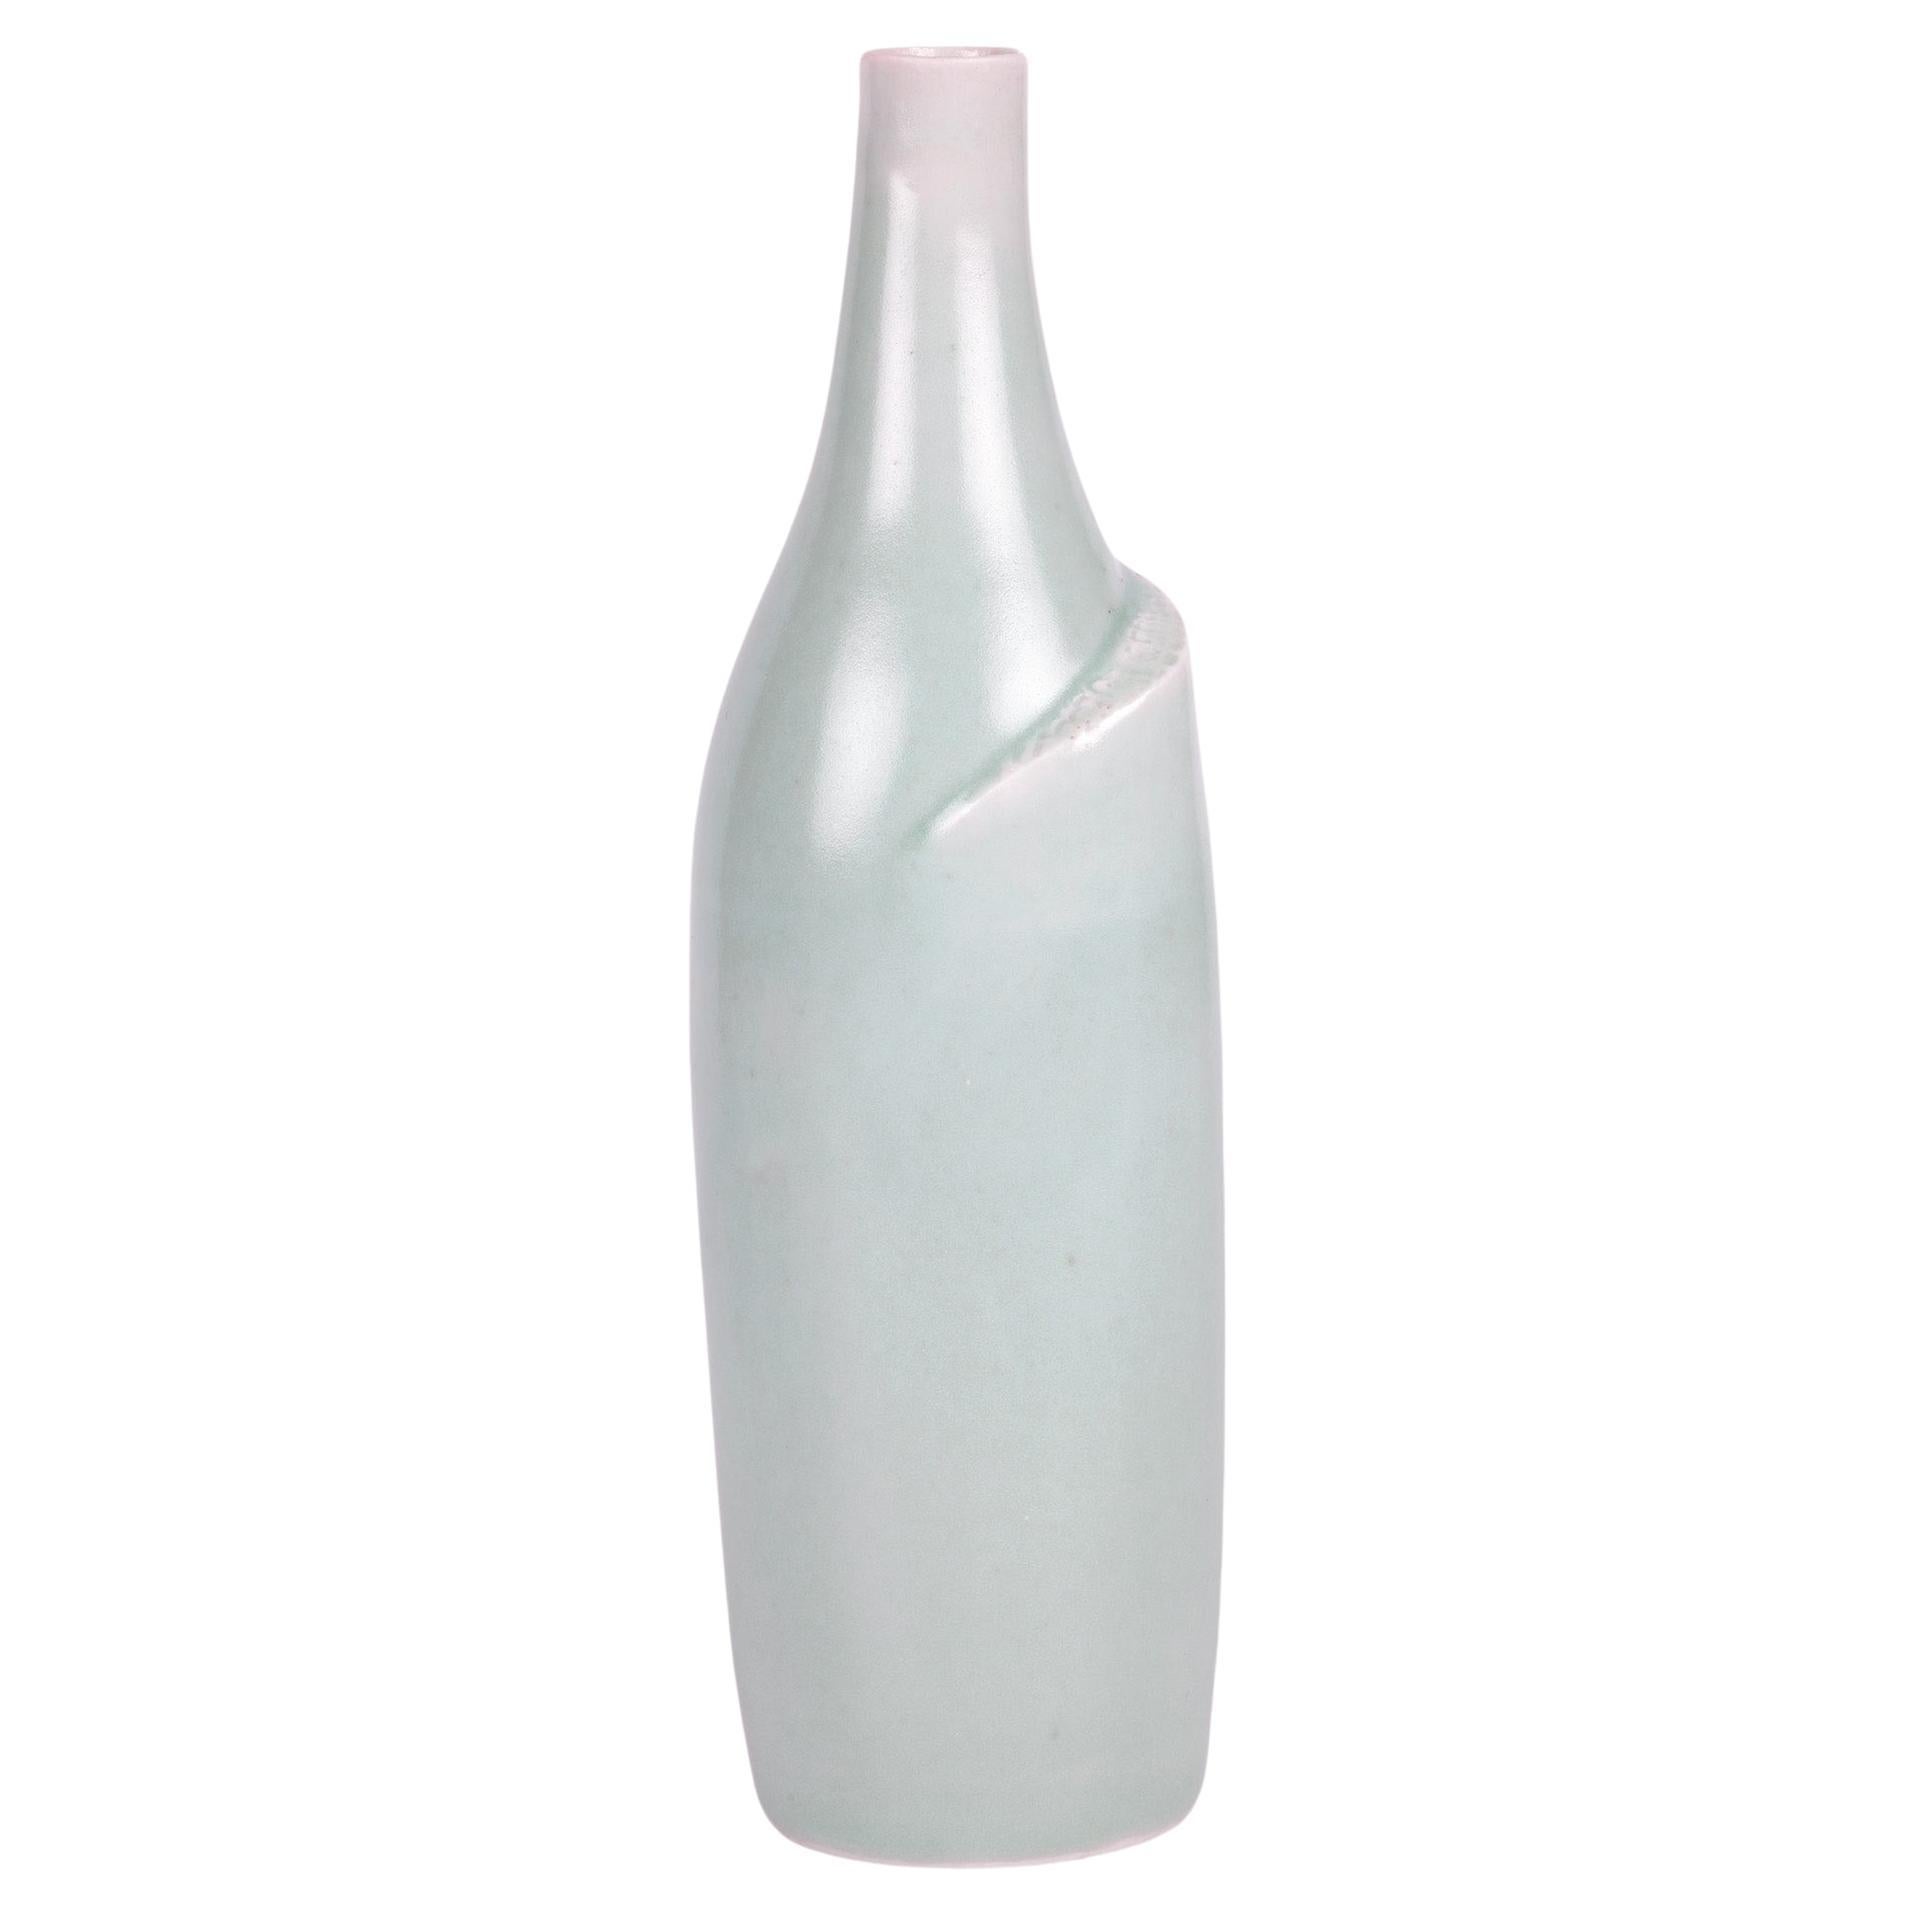 Keramikvase Celadon mit glasierter Flasche von Sonia Lewis Studio